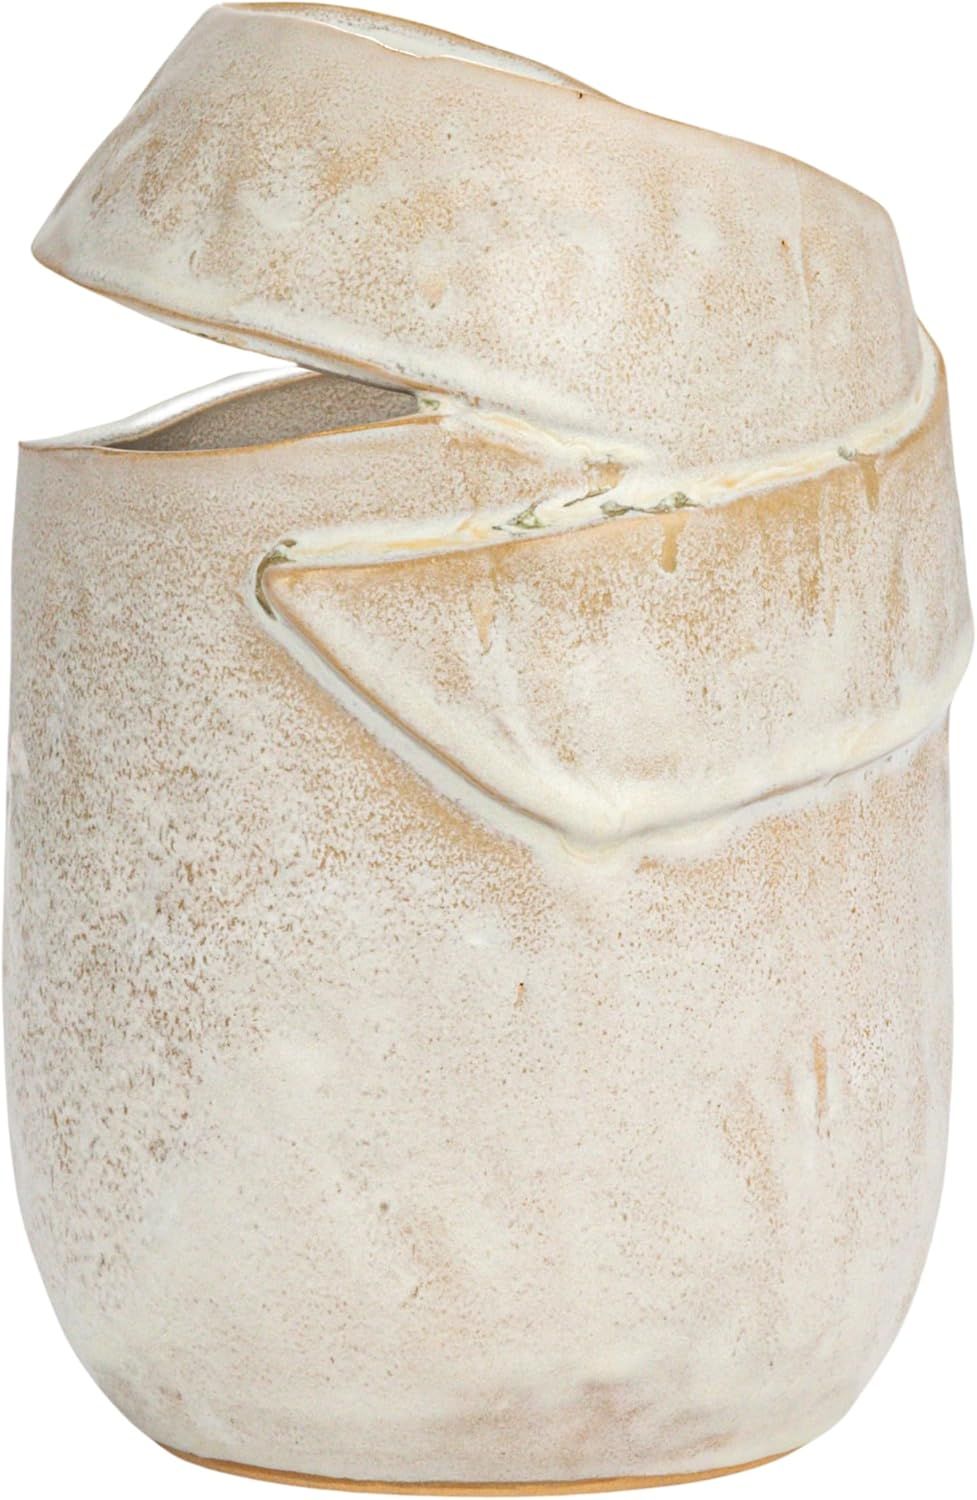 Bloomingville Round Stoneware Organic Shaped Vase with Reactive Glaze, Cream | Amazon (US)